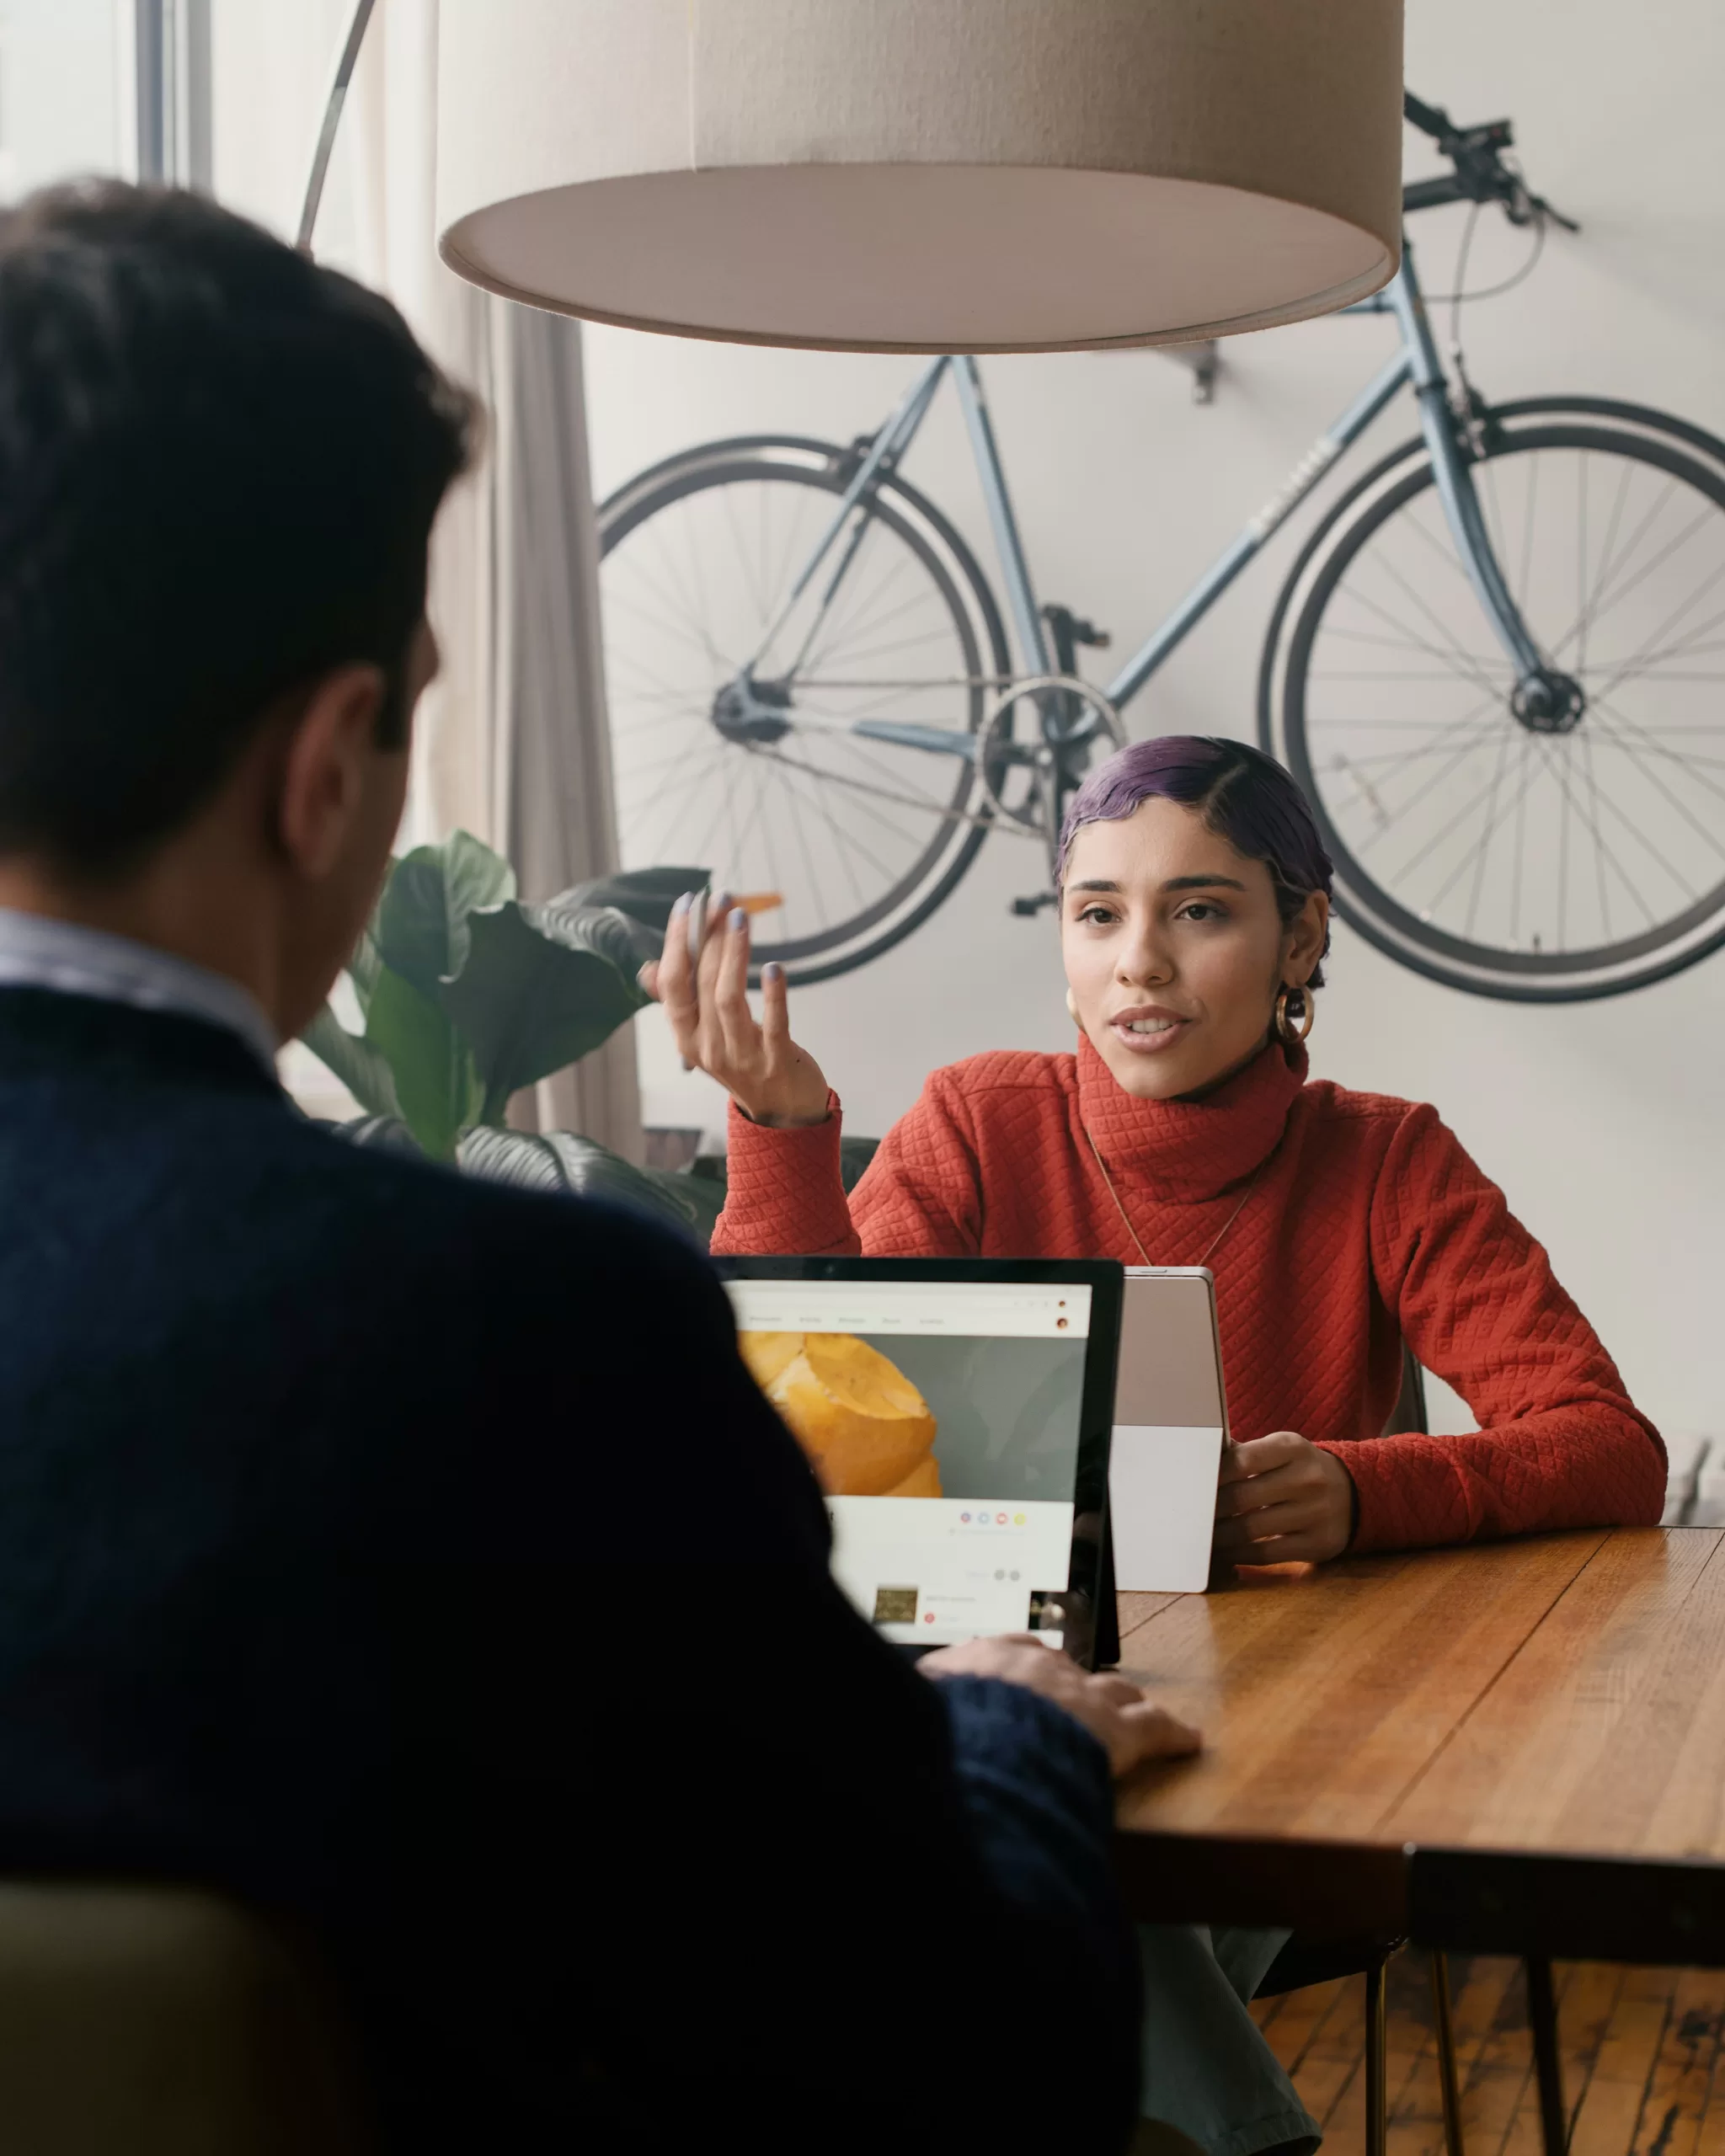 Eine Frau spricht mit einem Mann an einem Tisch sitzend. Ein Fahrrad hängt an der Wand